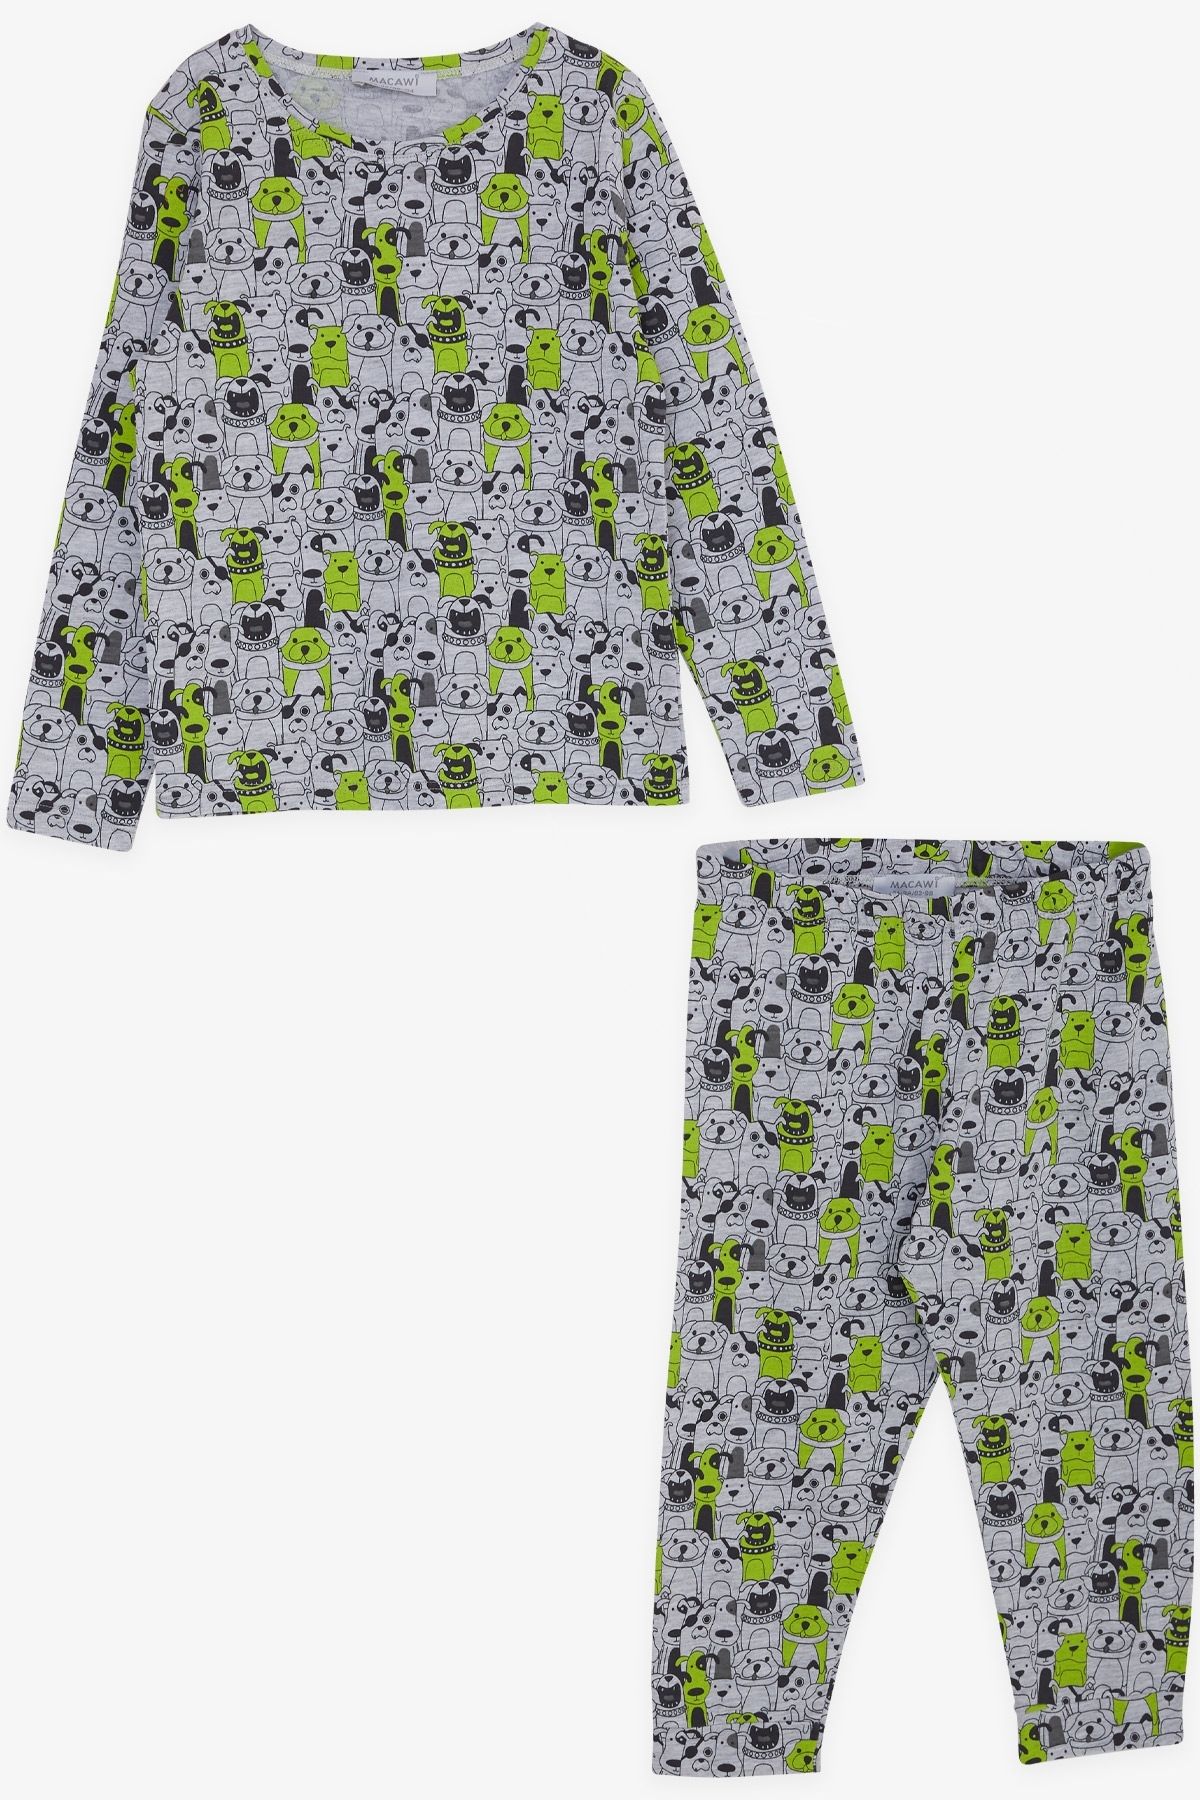 Macawi Breeze Erkek Çocuk Pijama Takımı Köpekçik Desenli 3-7 Yaş, Gri Melanj